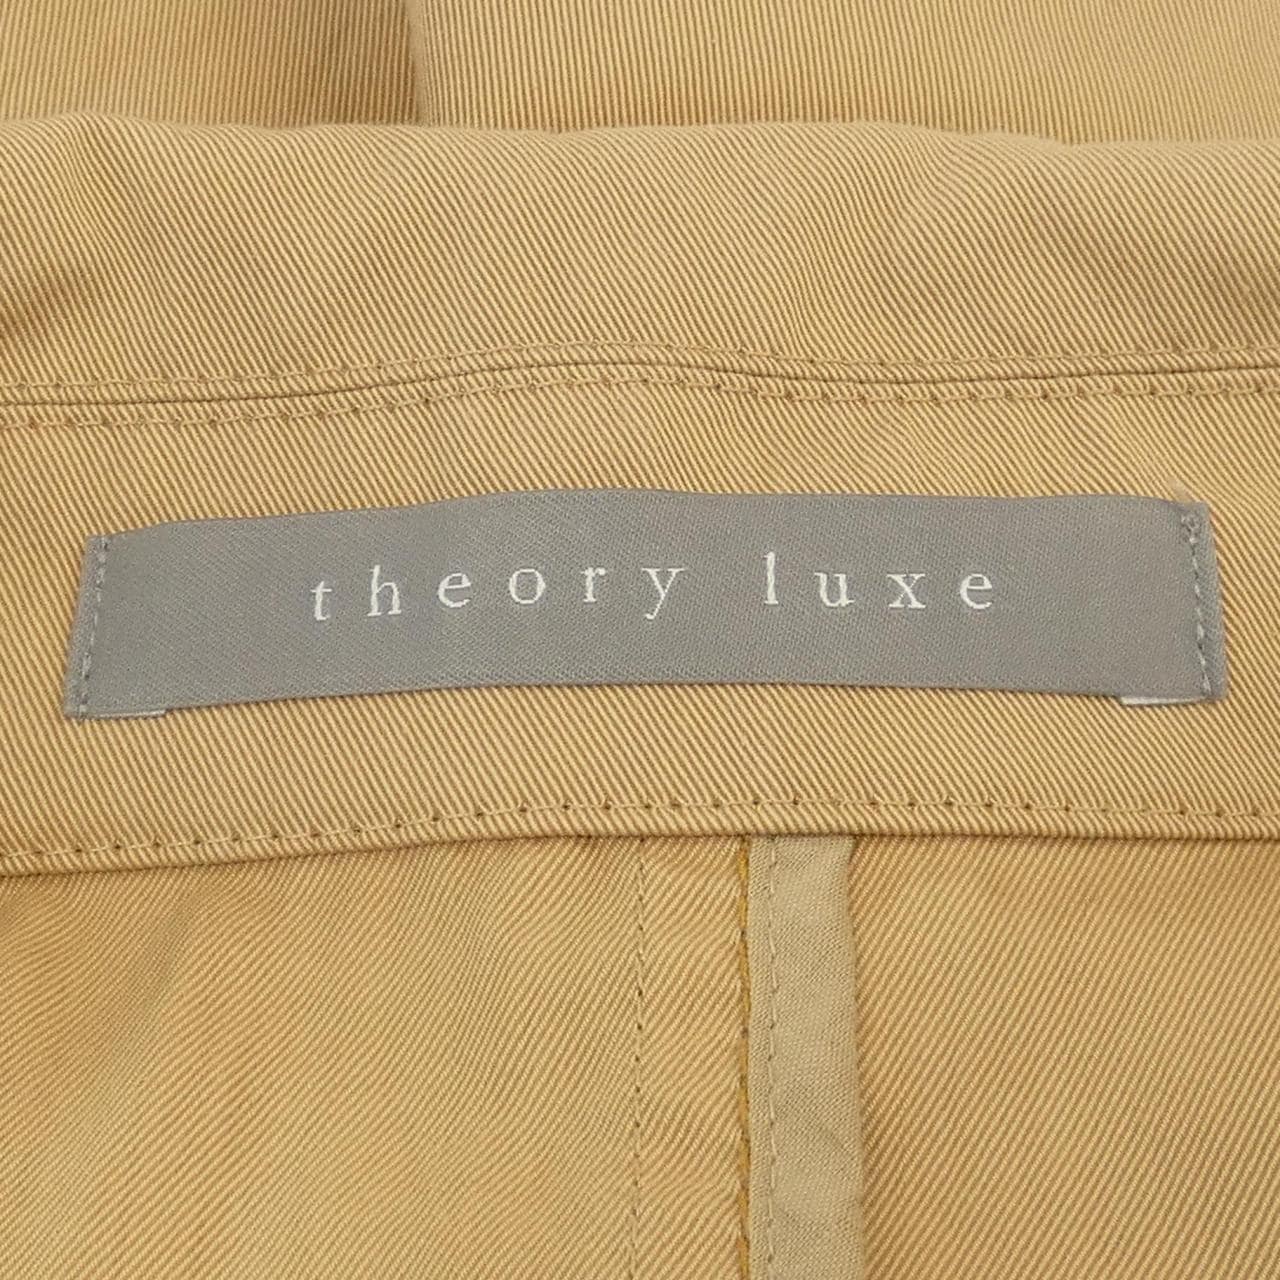 塞奧莉露Theory luxe大衣